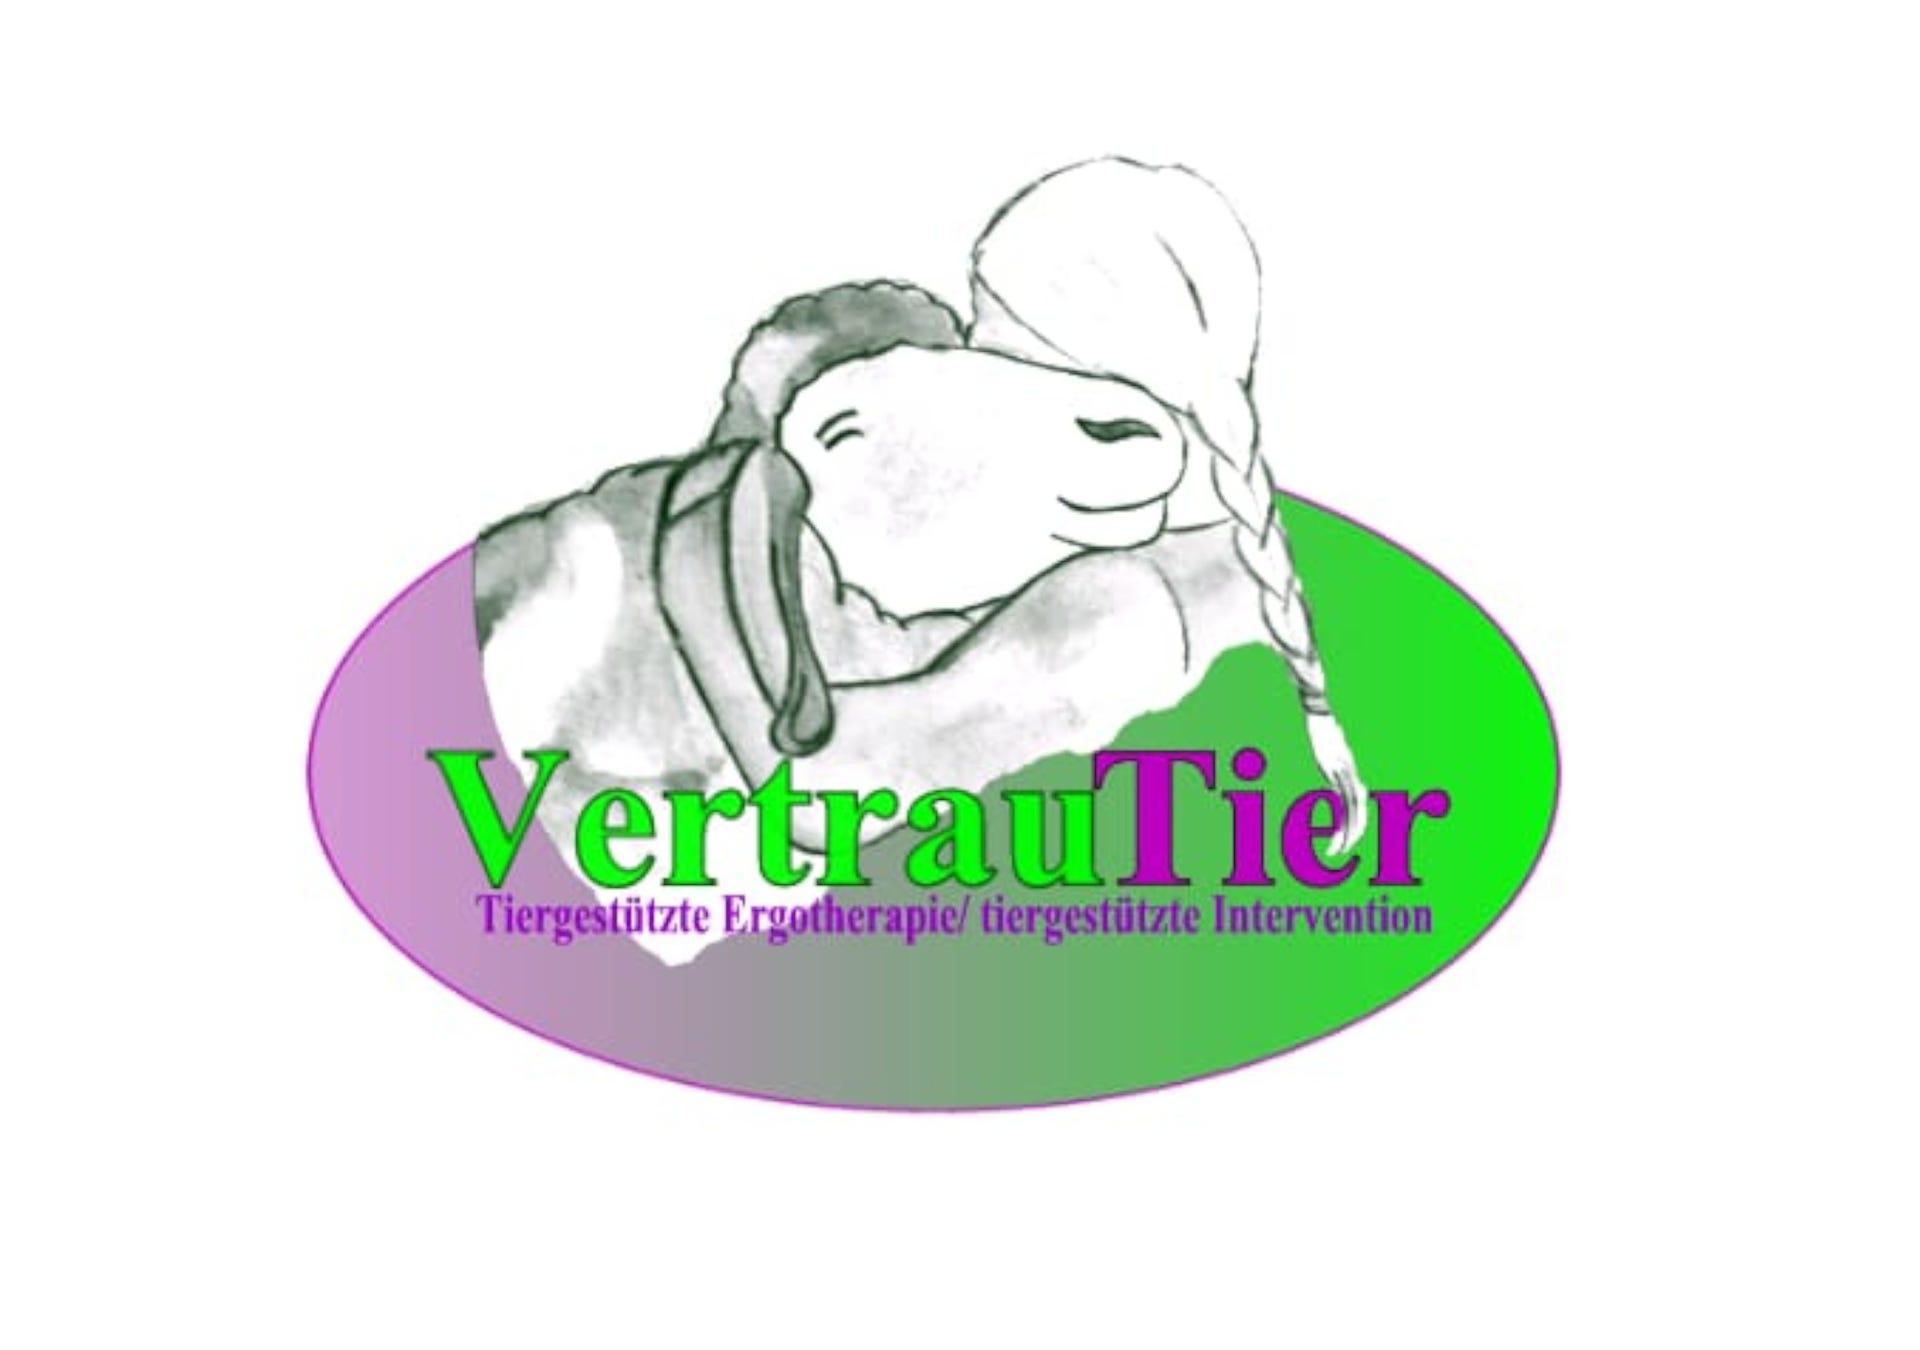 VertrauTier - Tiergestützte ergotherapie und Intervention